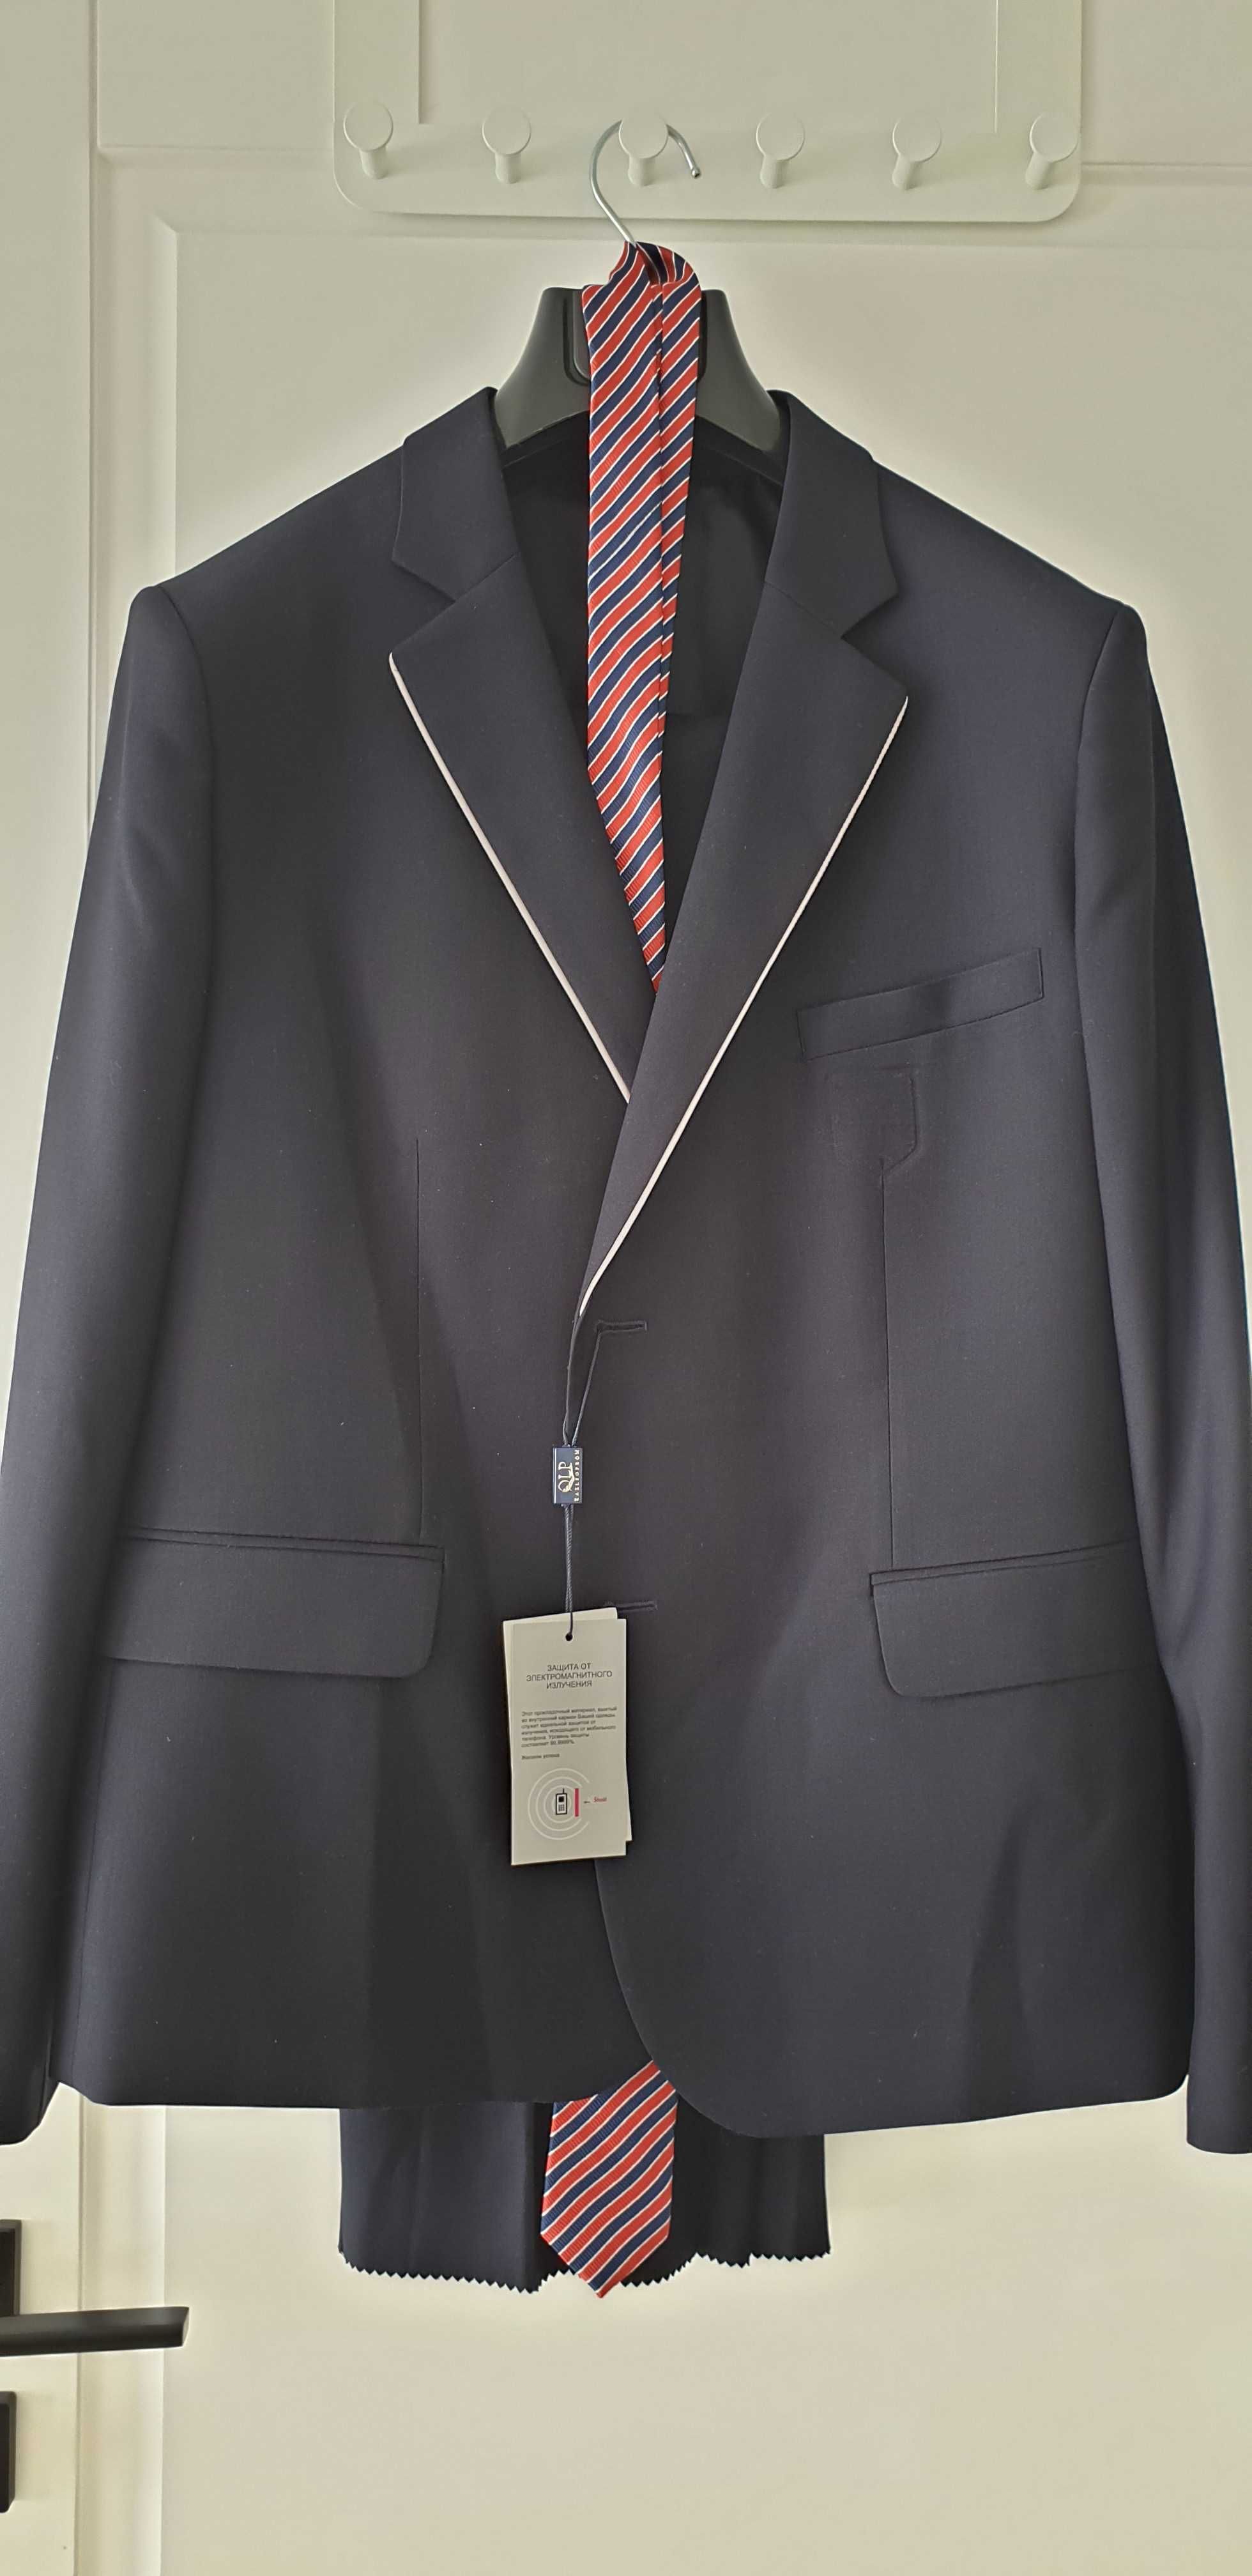 Школьный костюм НИШ мужской  фирменный  52 размер